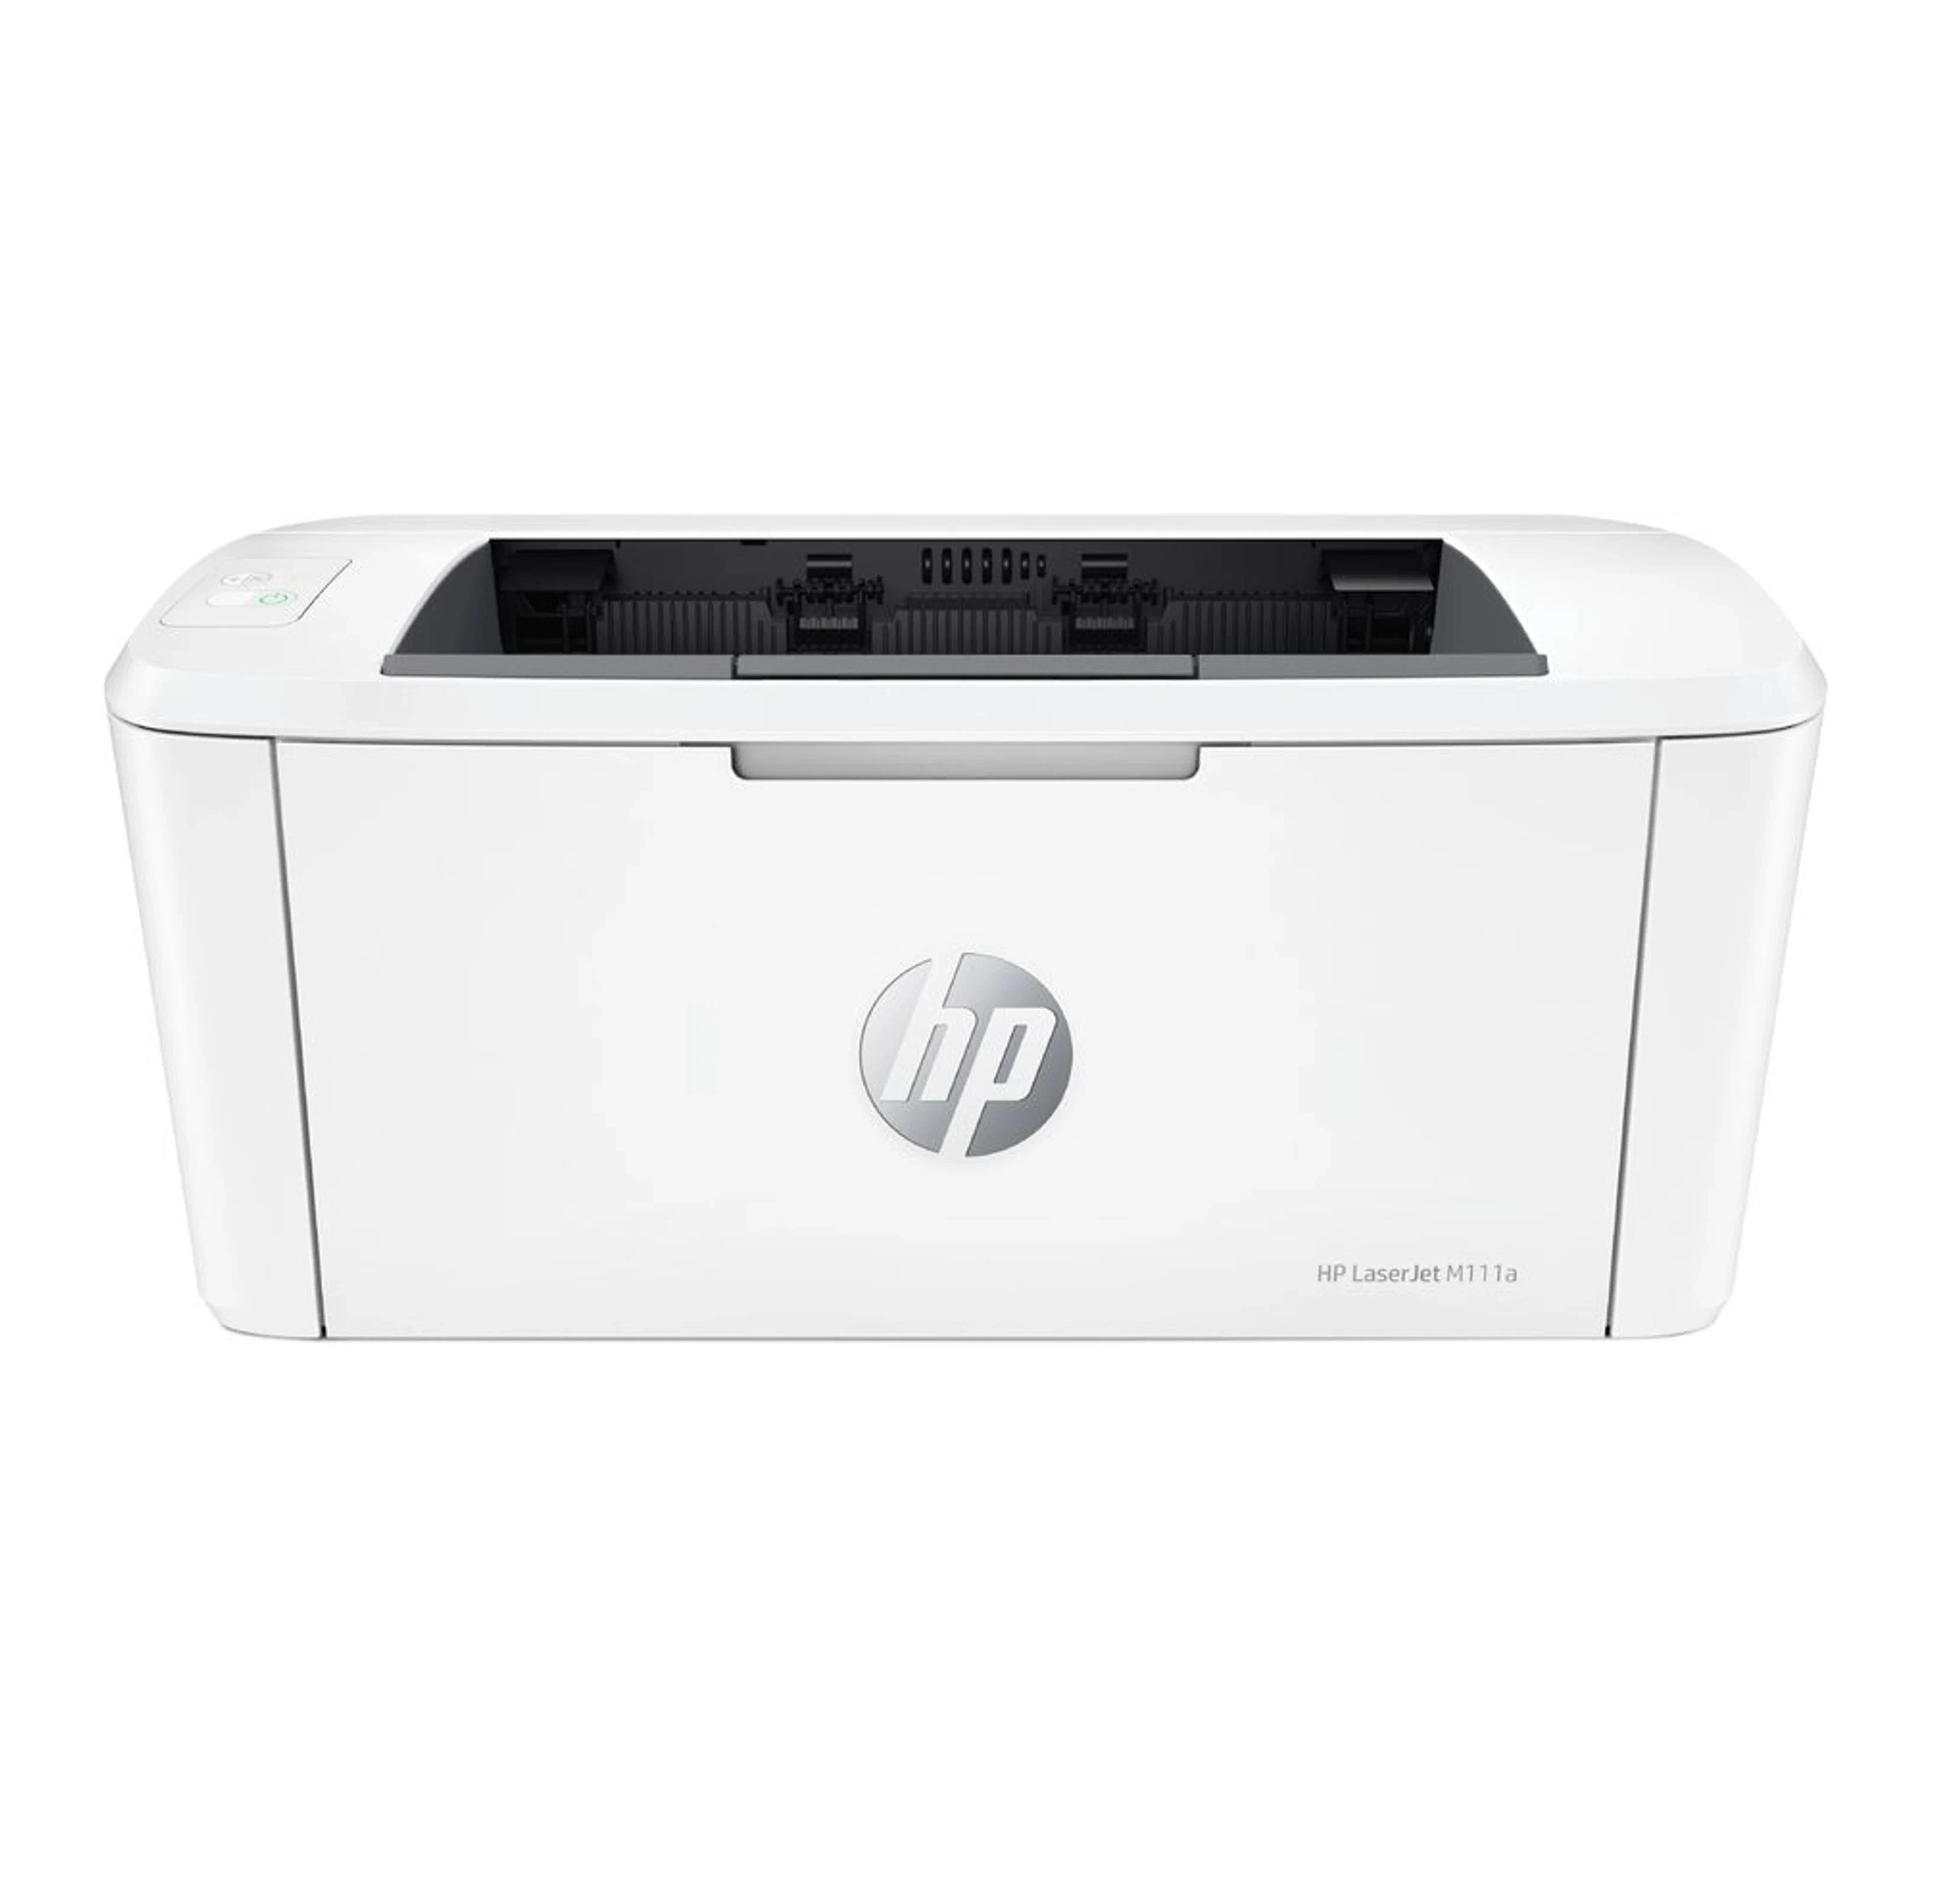 Принтер HP LaserJet M111a (Лазерный, ч/б, A4) купить